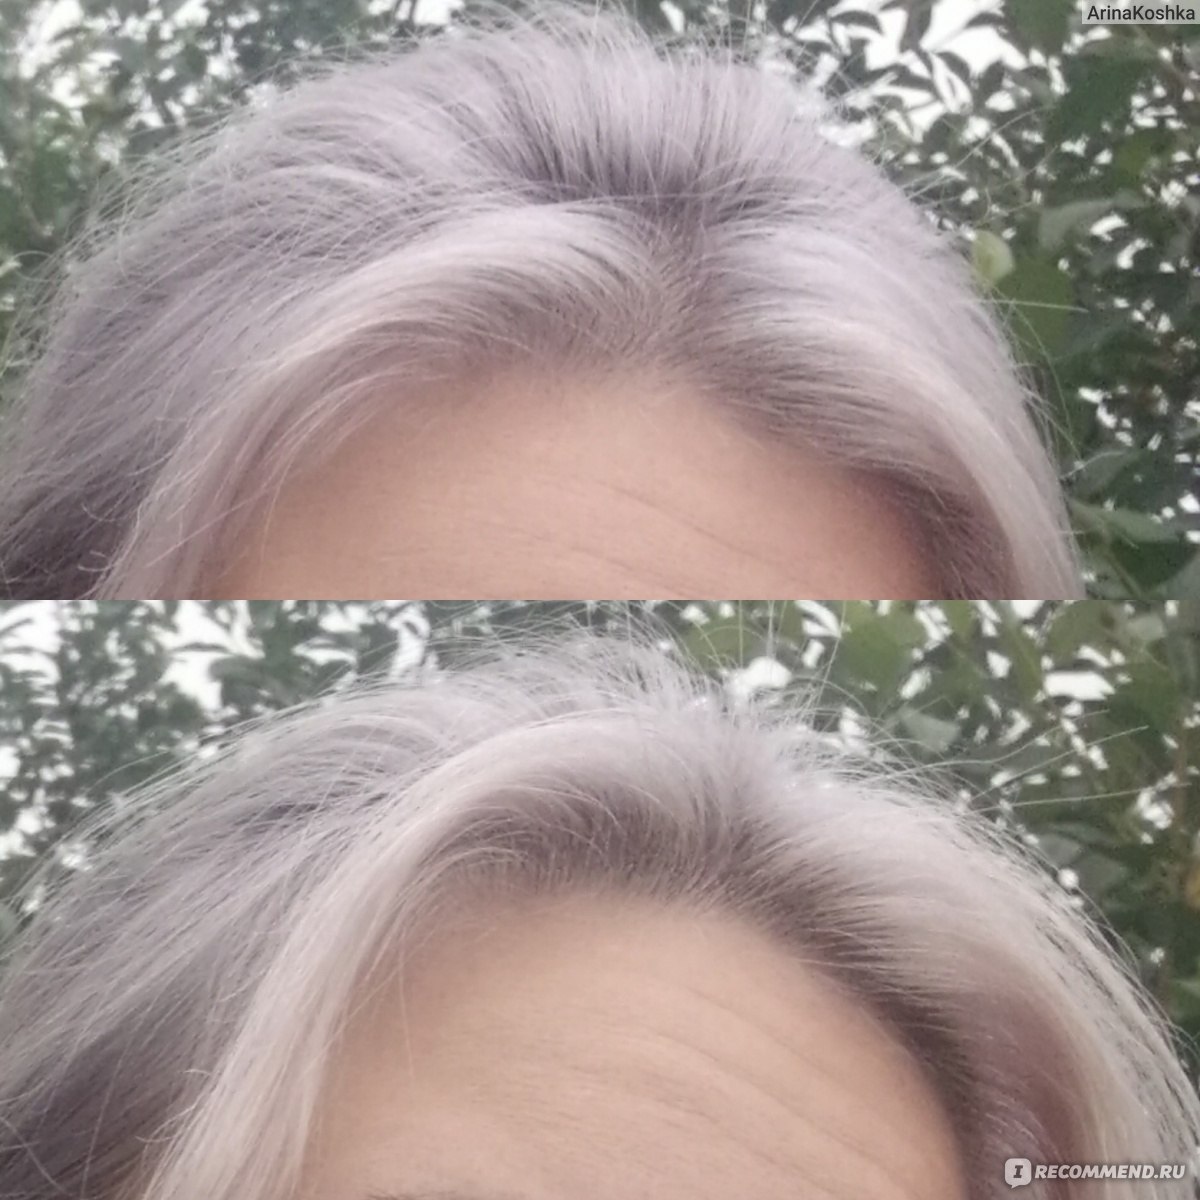 Краска пепельный блонд на русые волосы фото до и после